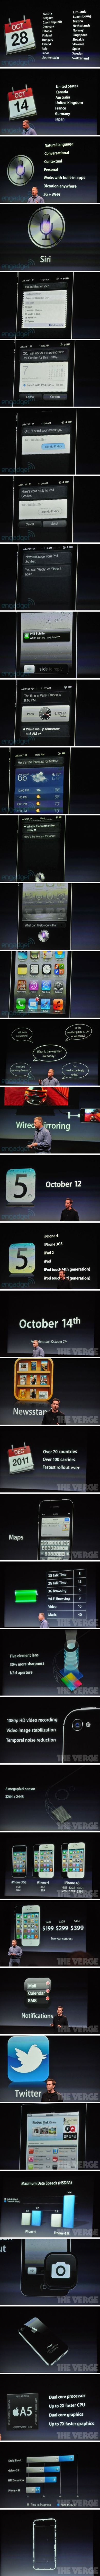 Megjelent az Apple iPhone 4S, nincs iPhone 5 (részletek)